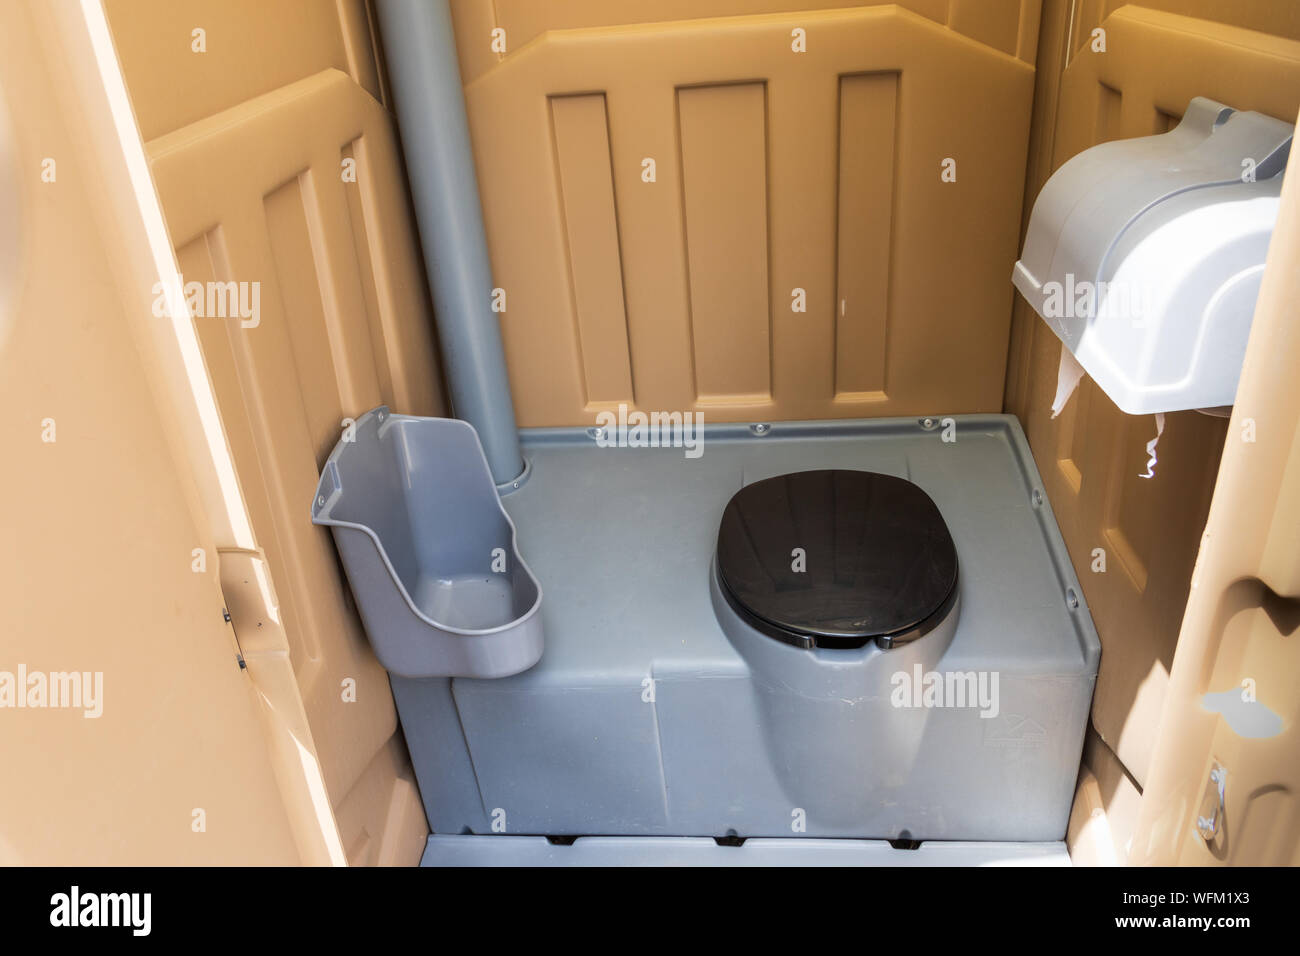 ARROYO SECO, NM, USA-12 Juli 18: Eine frische, fast neue tragbare Toilette Innenraum, bereit für den Einsatz auf der Main Street in diesem kleinen Dorf. Stockfoto